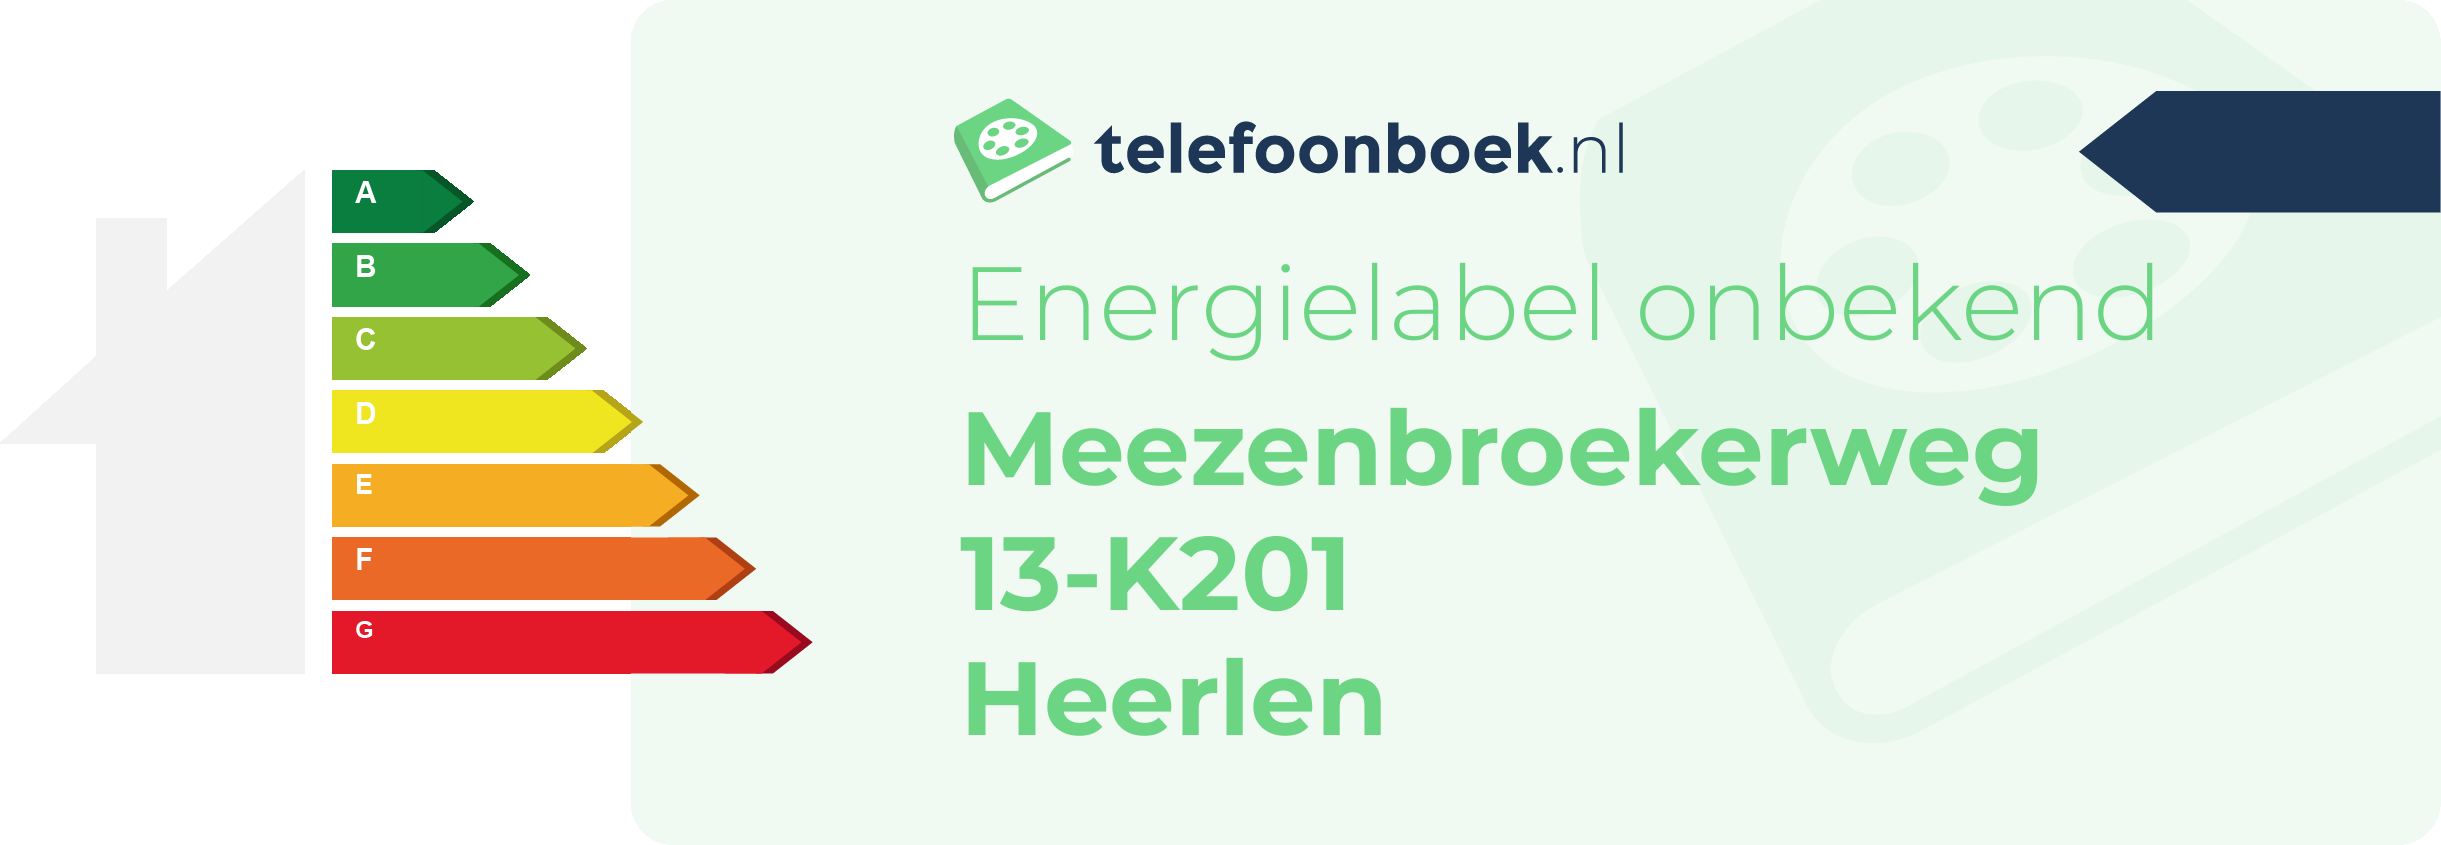 Energielabel Meezenbroekerweg 13-K201 Heerlen